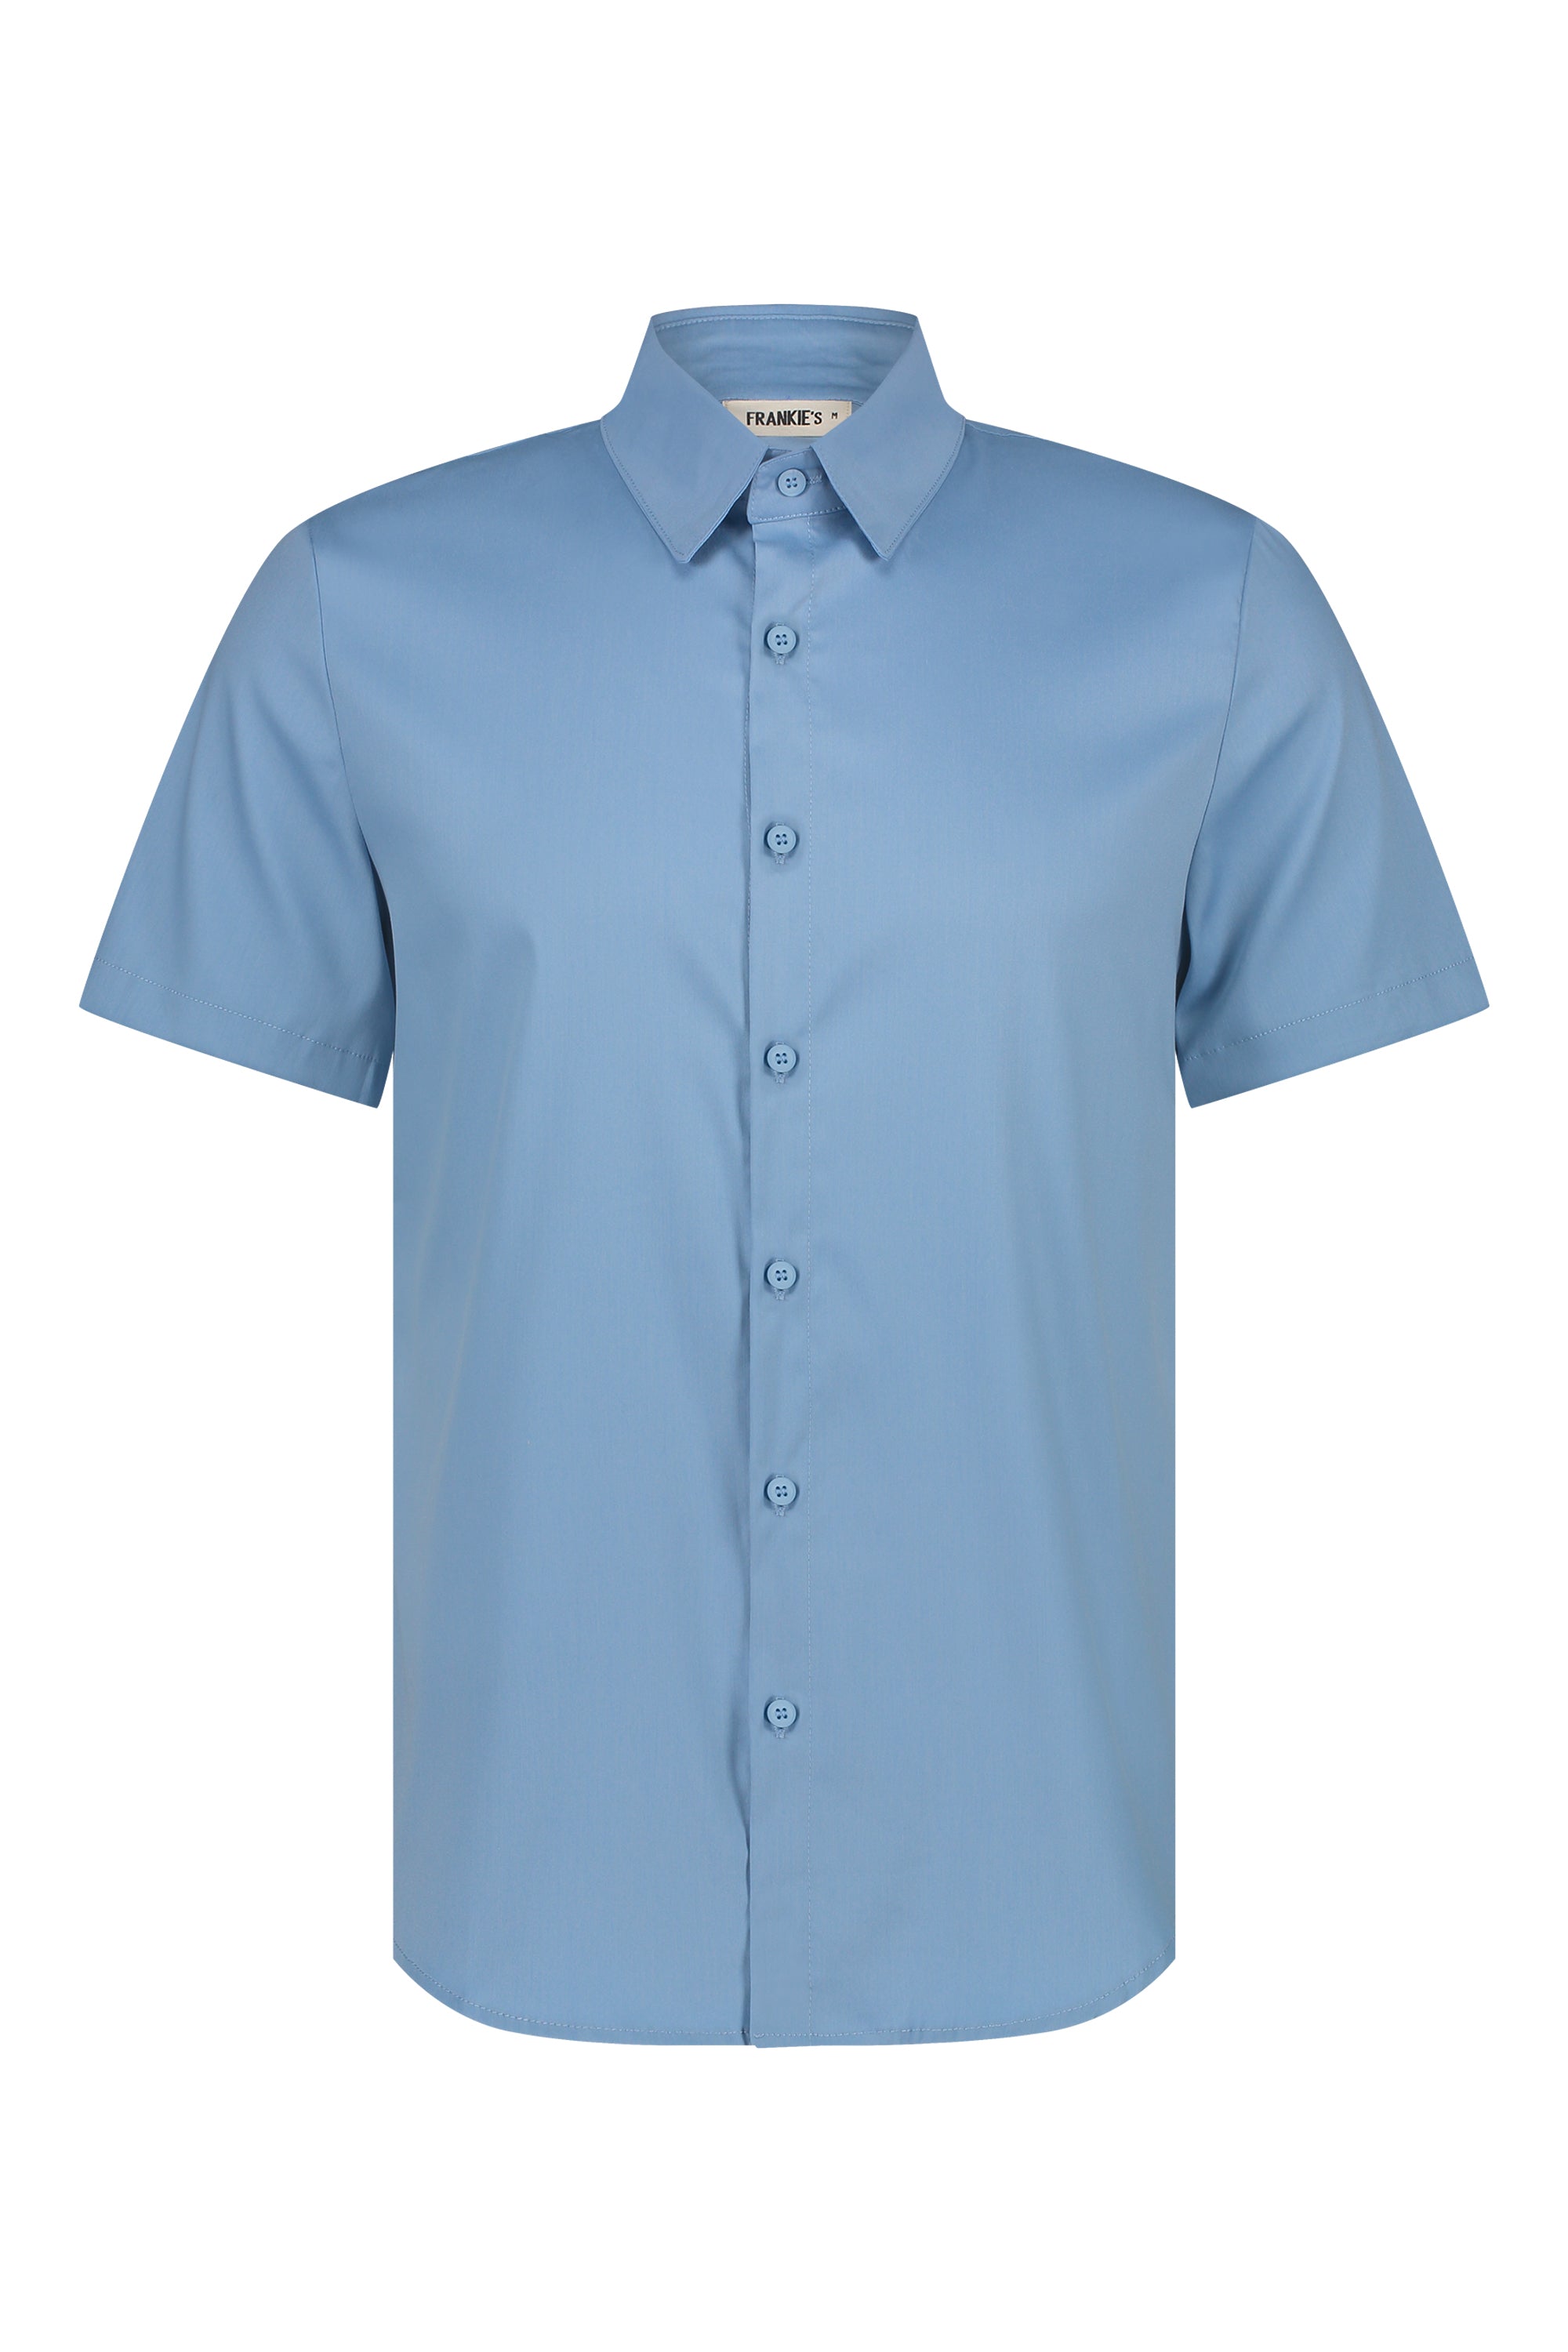 Shirt super stretch short sleeve light blue